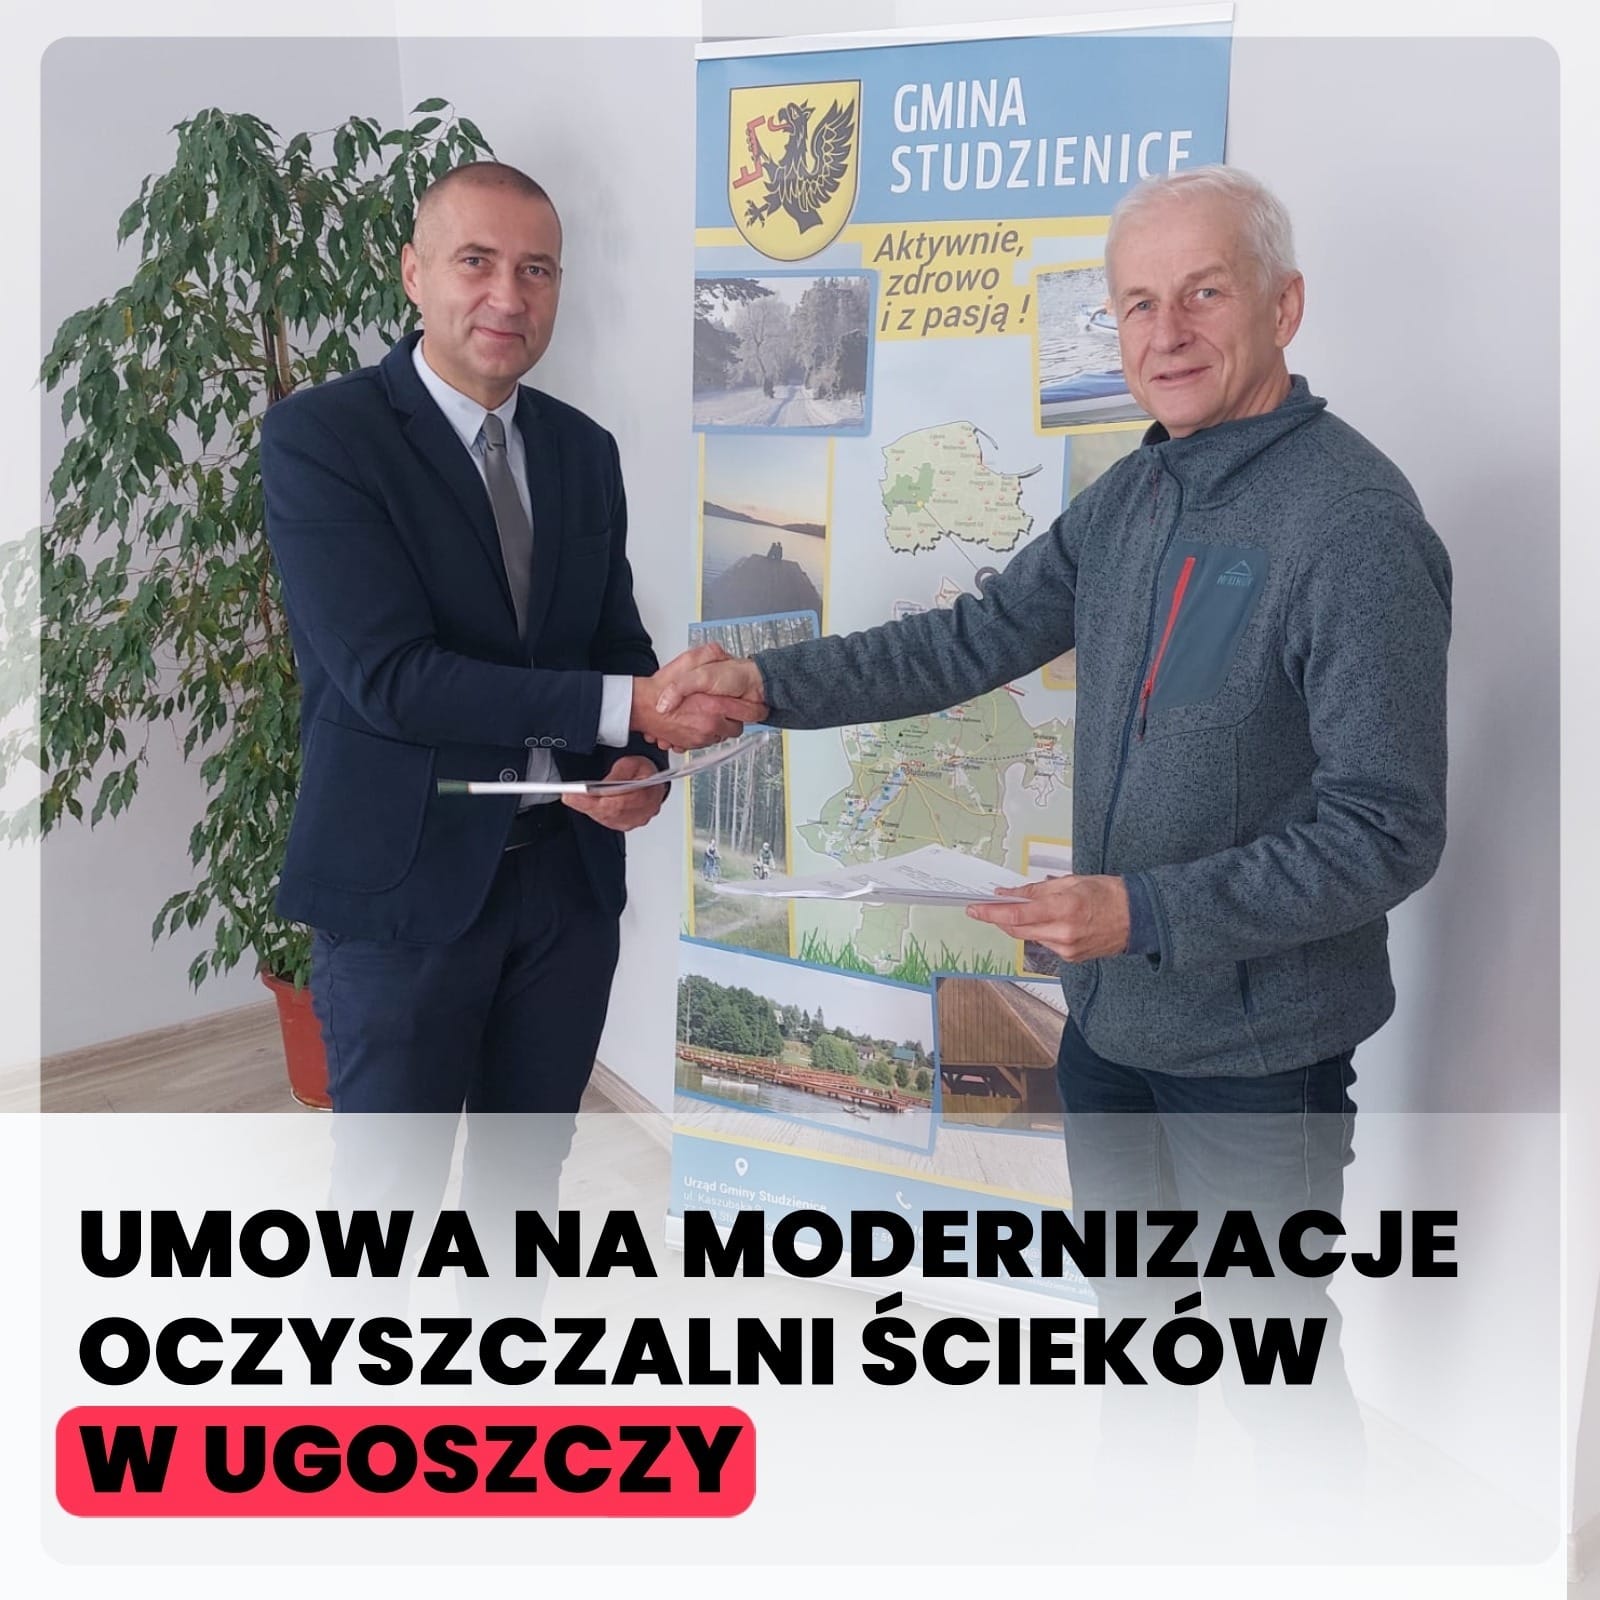 Umowa na modernizacje oczyszczalni ścieków w Ugoszczy podpisana!